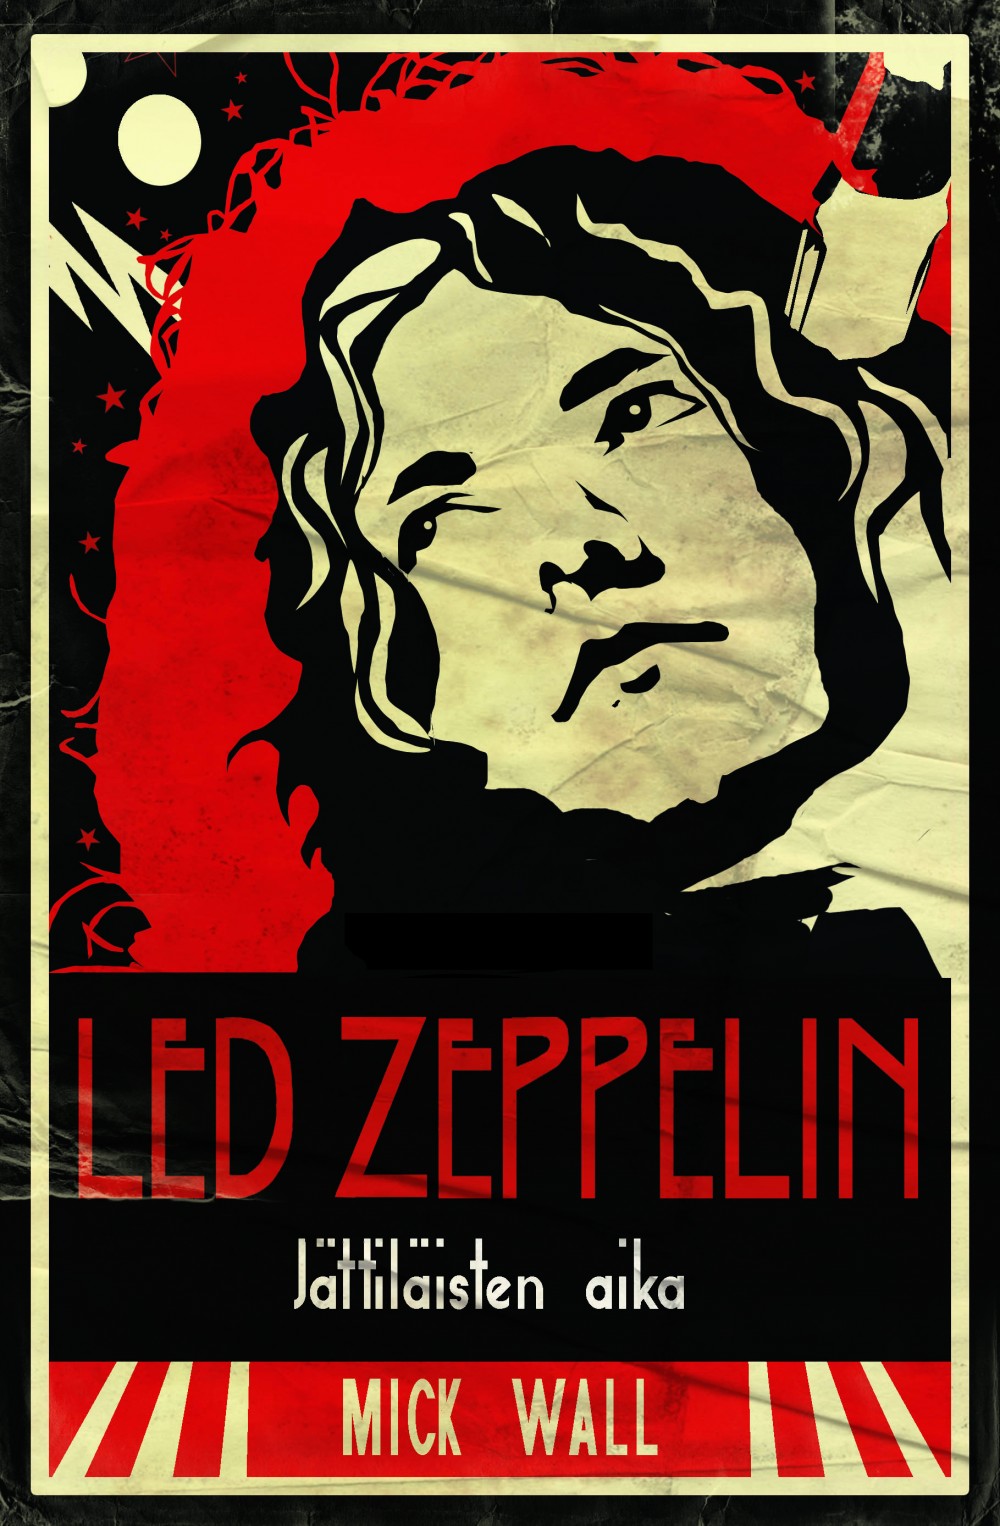 Led Zeppelin - Jttilisten aika